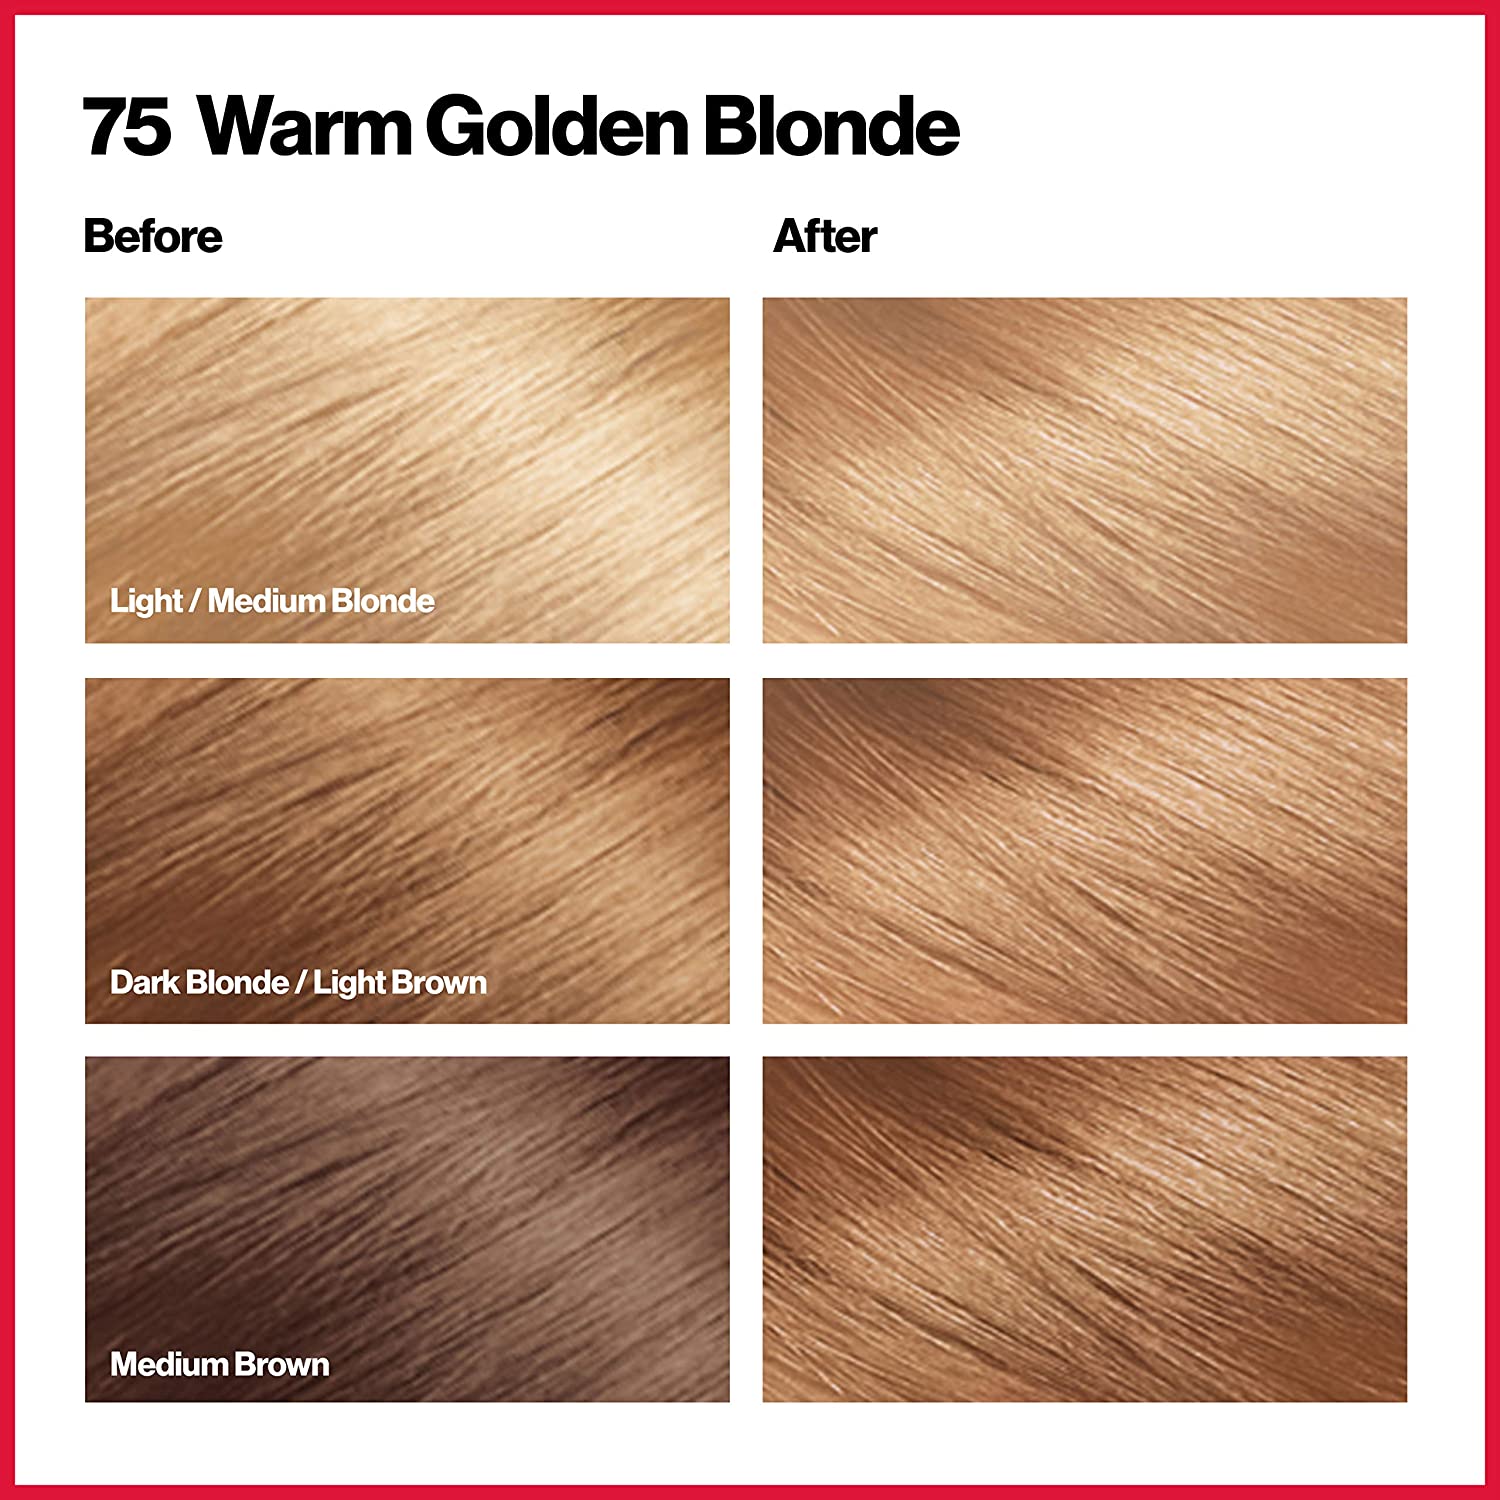 Warm Golden Blonde